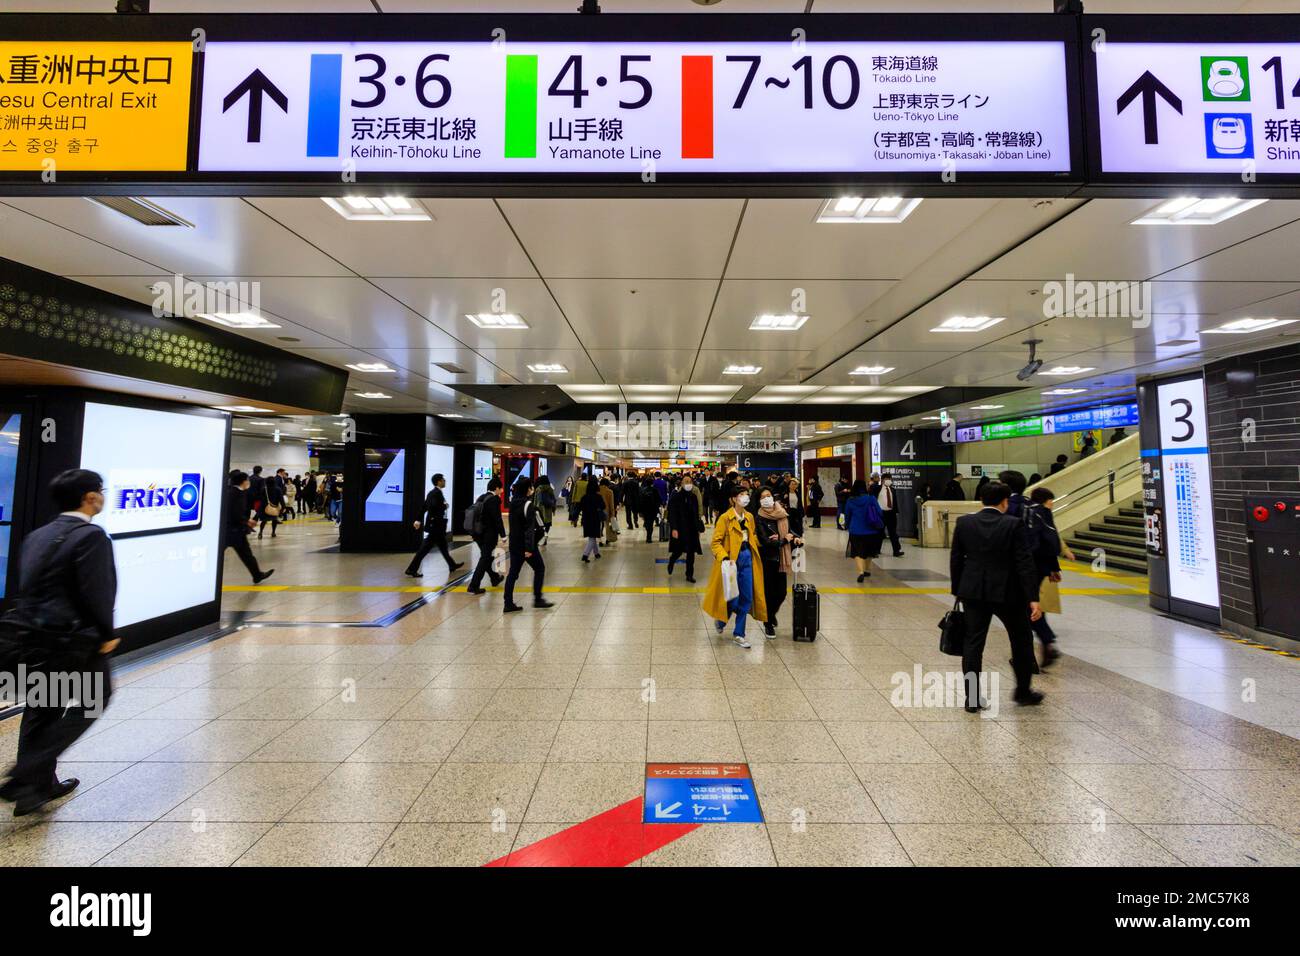 All'interno della stazione di Tokyo, con un cartello a soffitto per l'uscita centrale, e le piattaforme 3-10 per la linea Keihin-Tohoku e Yamanote (loop). Foto Stock